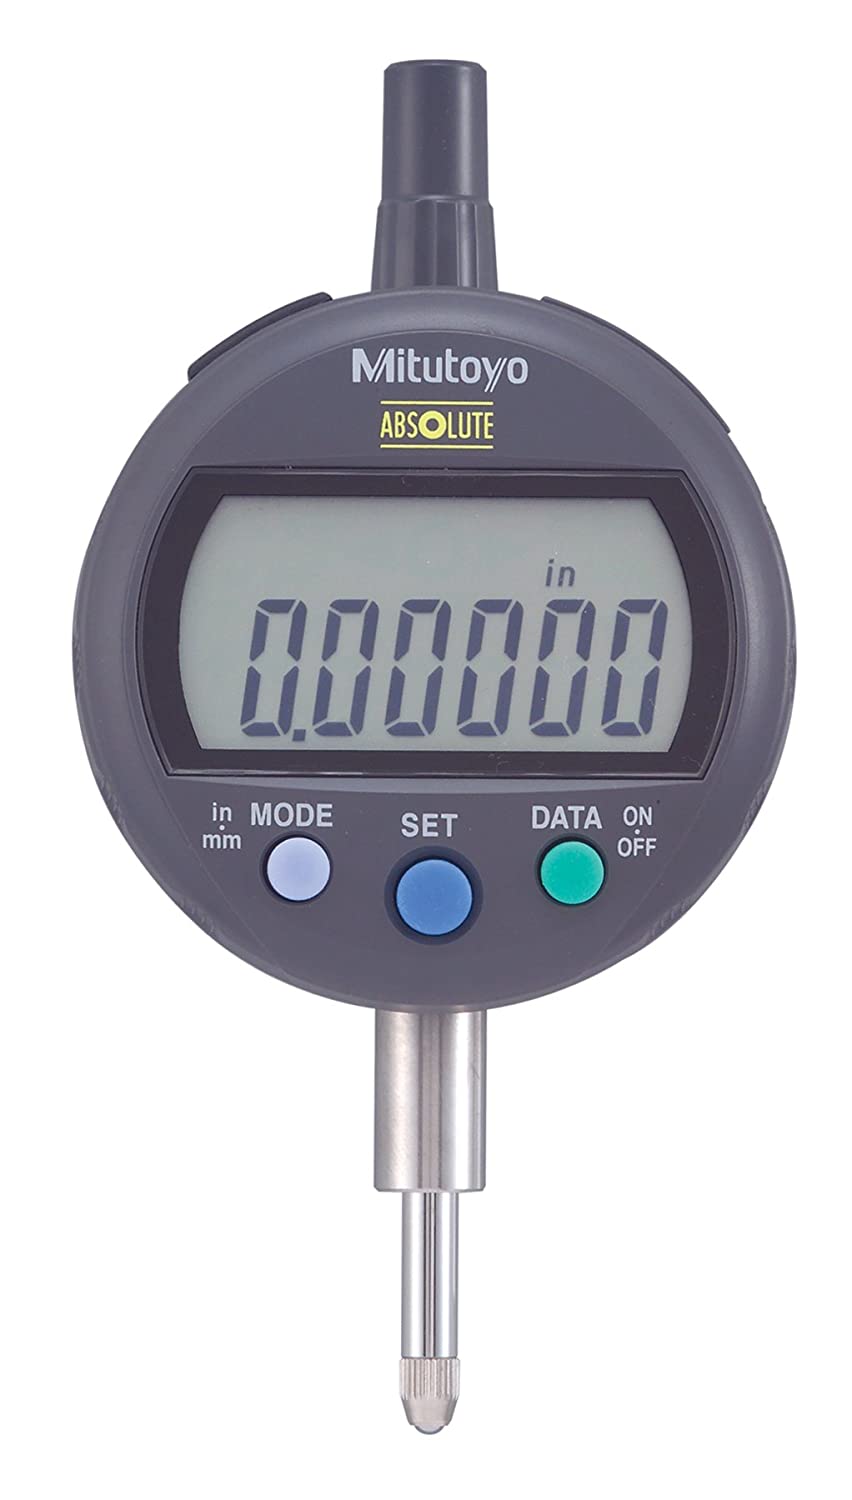 絕對數字指示器ID-CX係列543 -標準型(MITUTOYO)